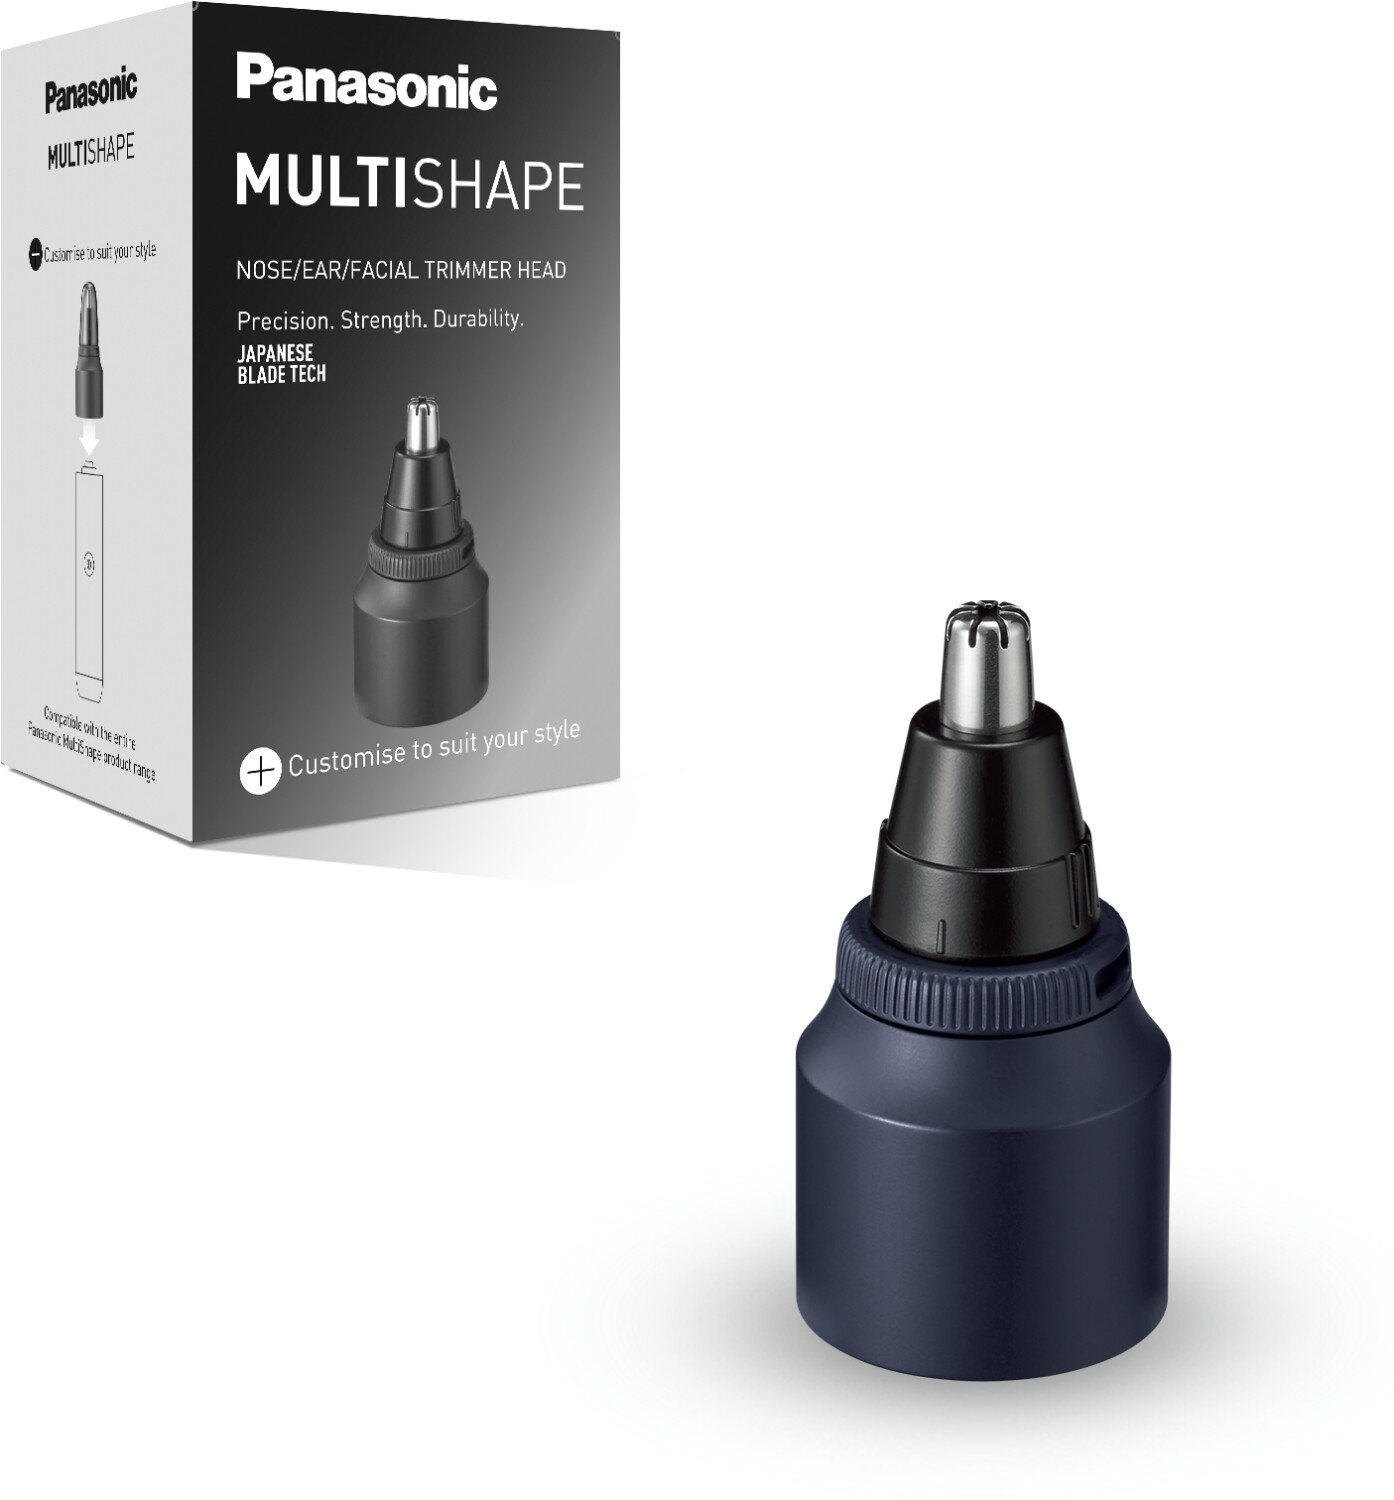 € Multishape bei Panasonic Trimmer 11,90 Preisvergleich Head Nose/Ear/Facial | ER-CNT1 ab